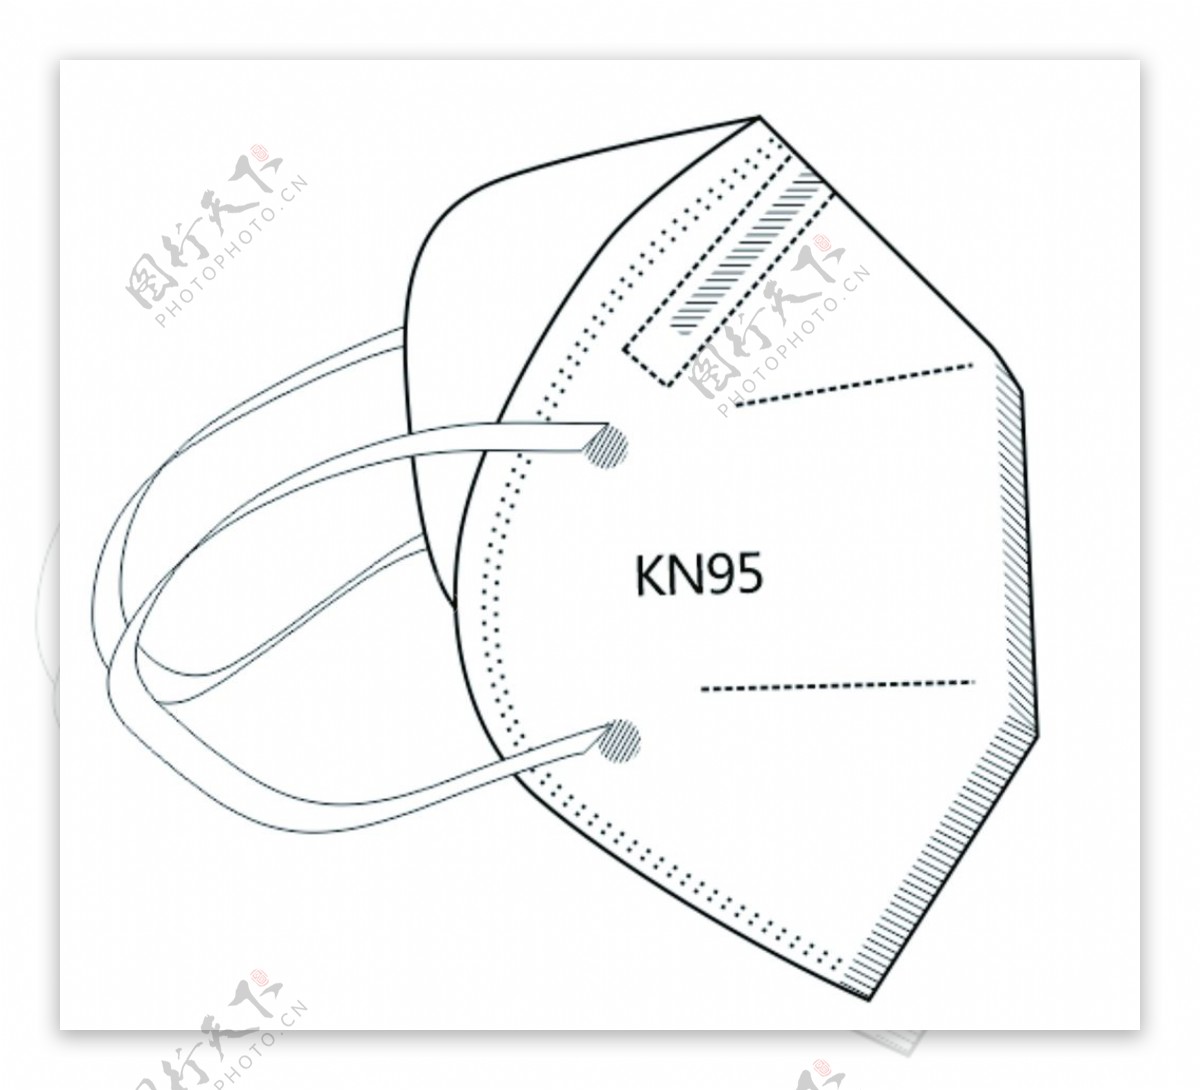 KN95防护口罩